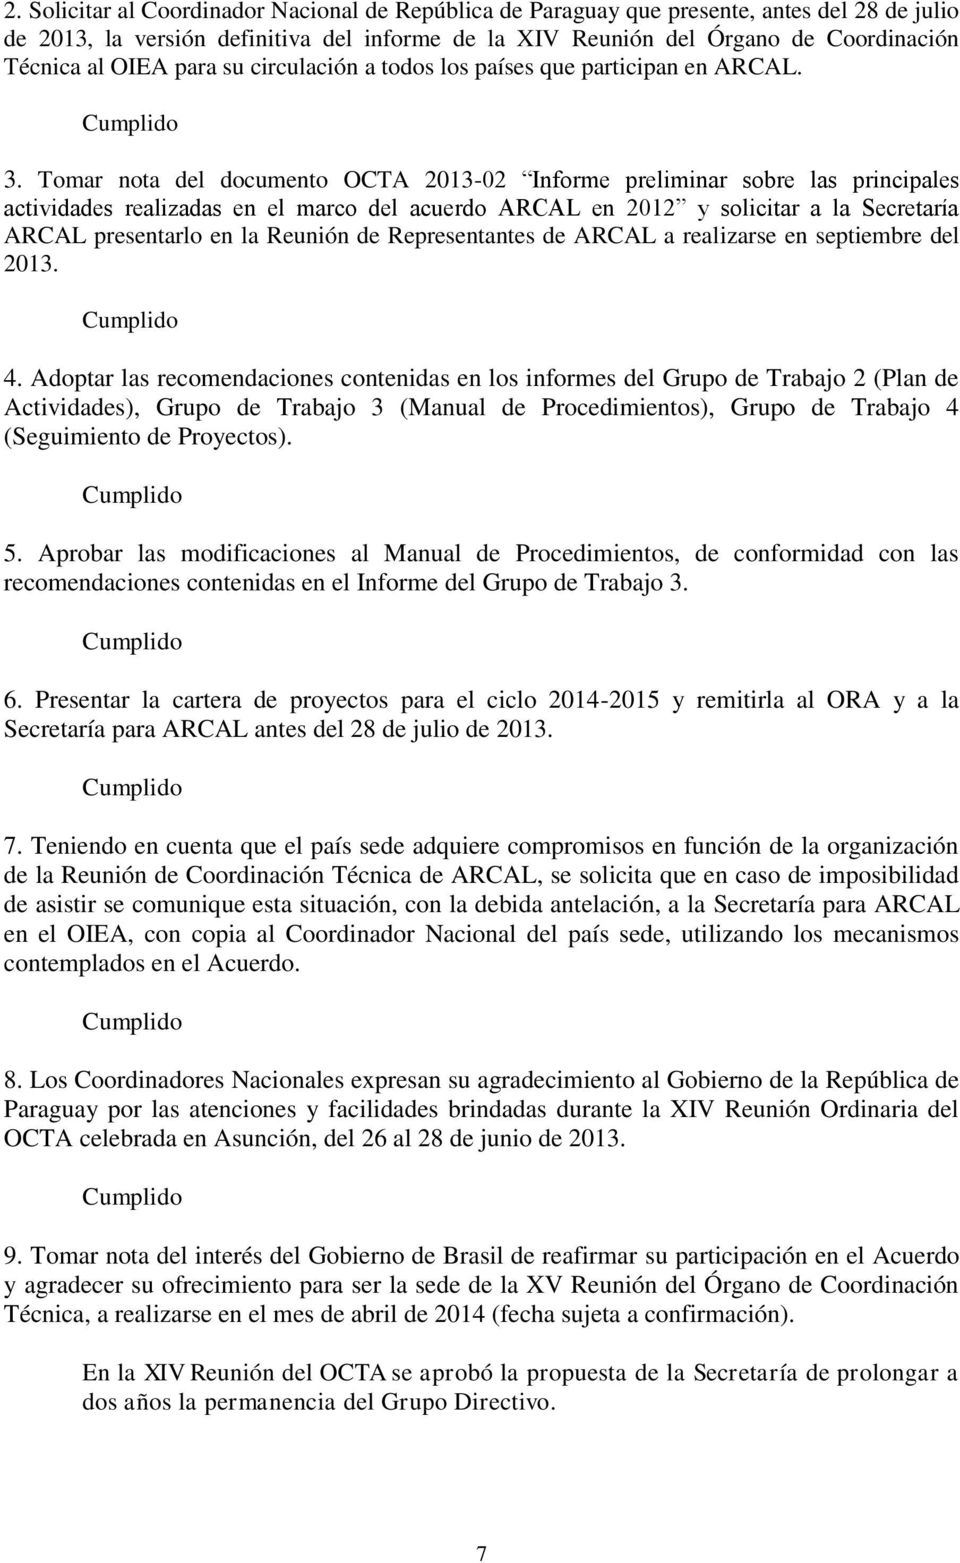 Tomar nota del documento OCTA 2013-02 Informe preliminar sobre las principales actividades realizadas en el marco del acuerdo ARCAL en 2012 y solicitar a la Secretaría ARCAL presentarlo en la Reunión